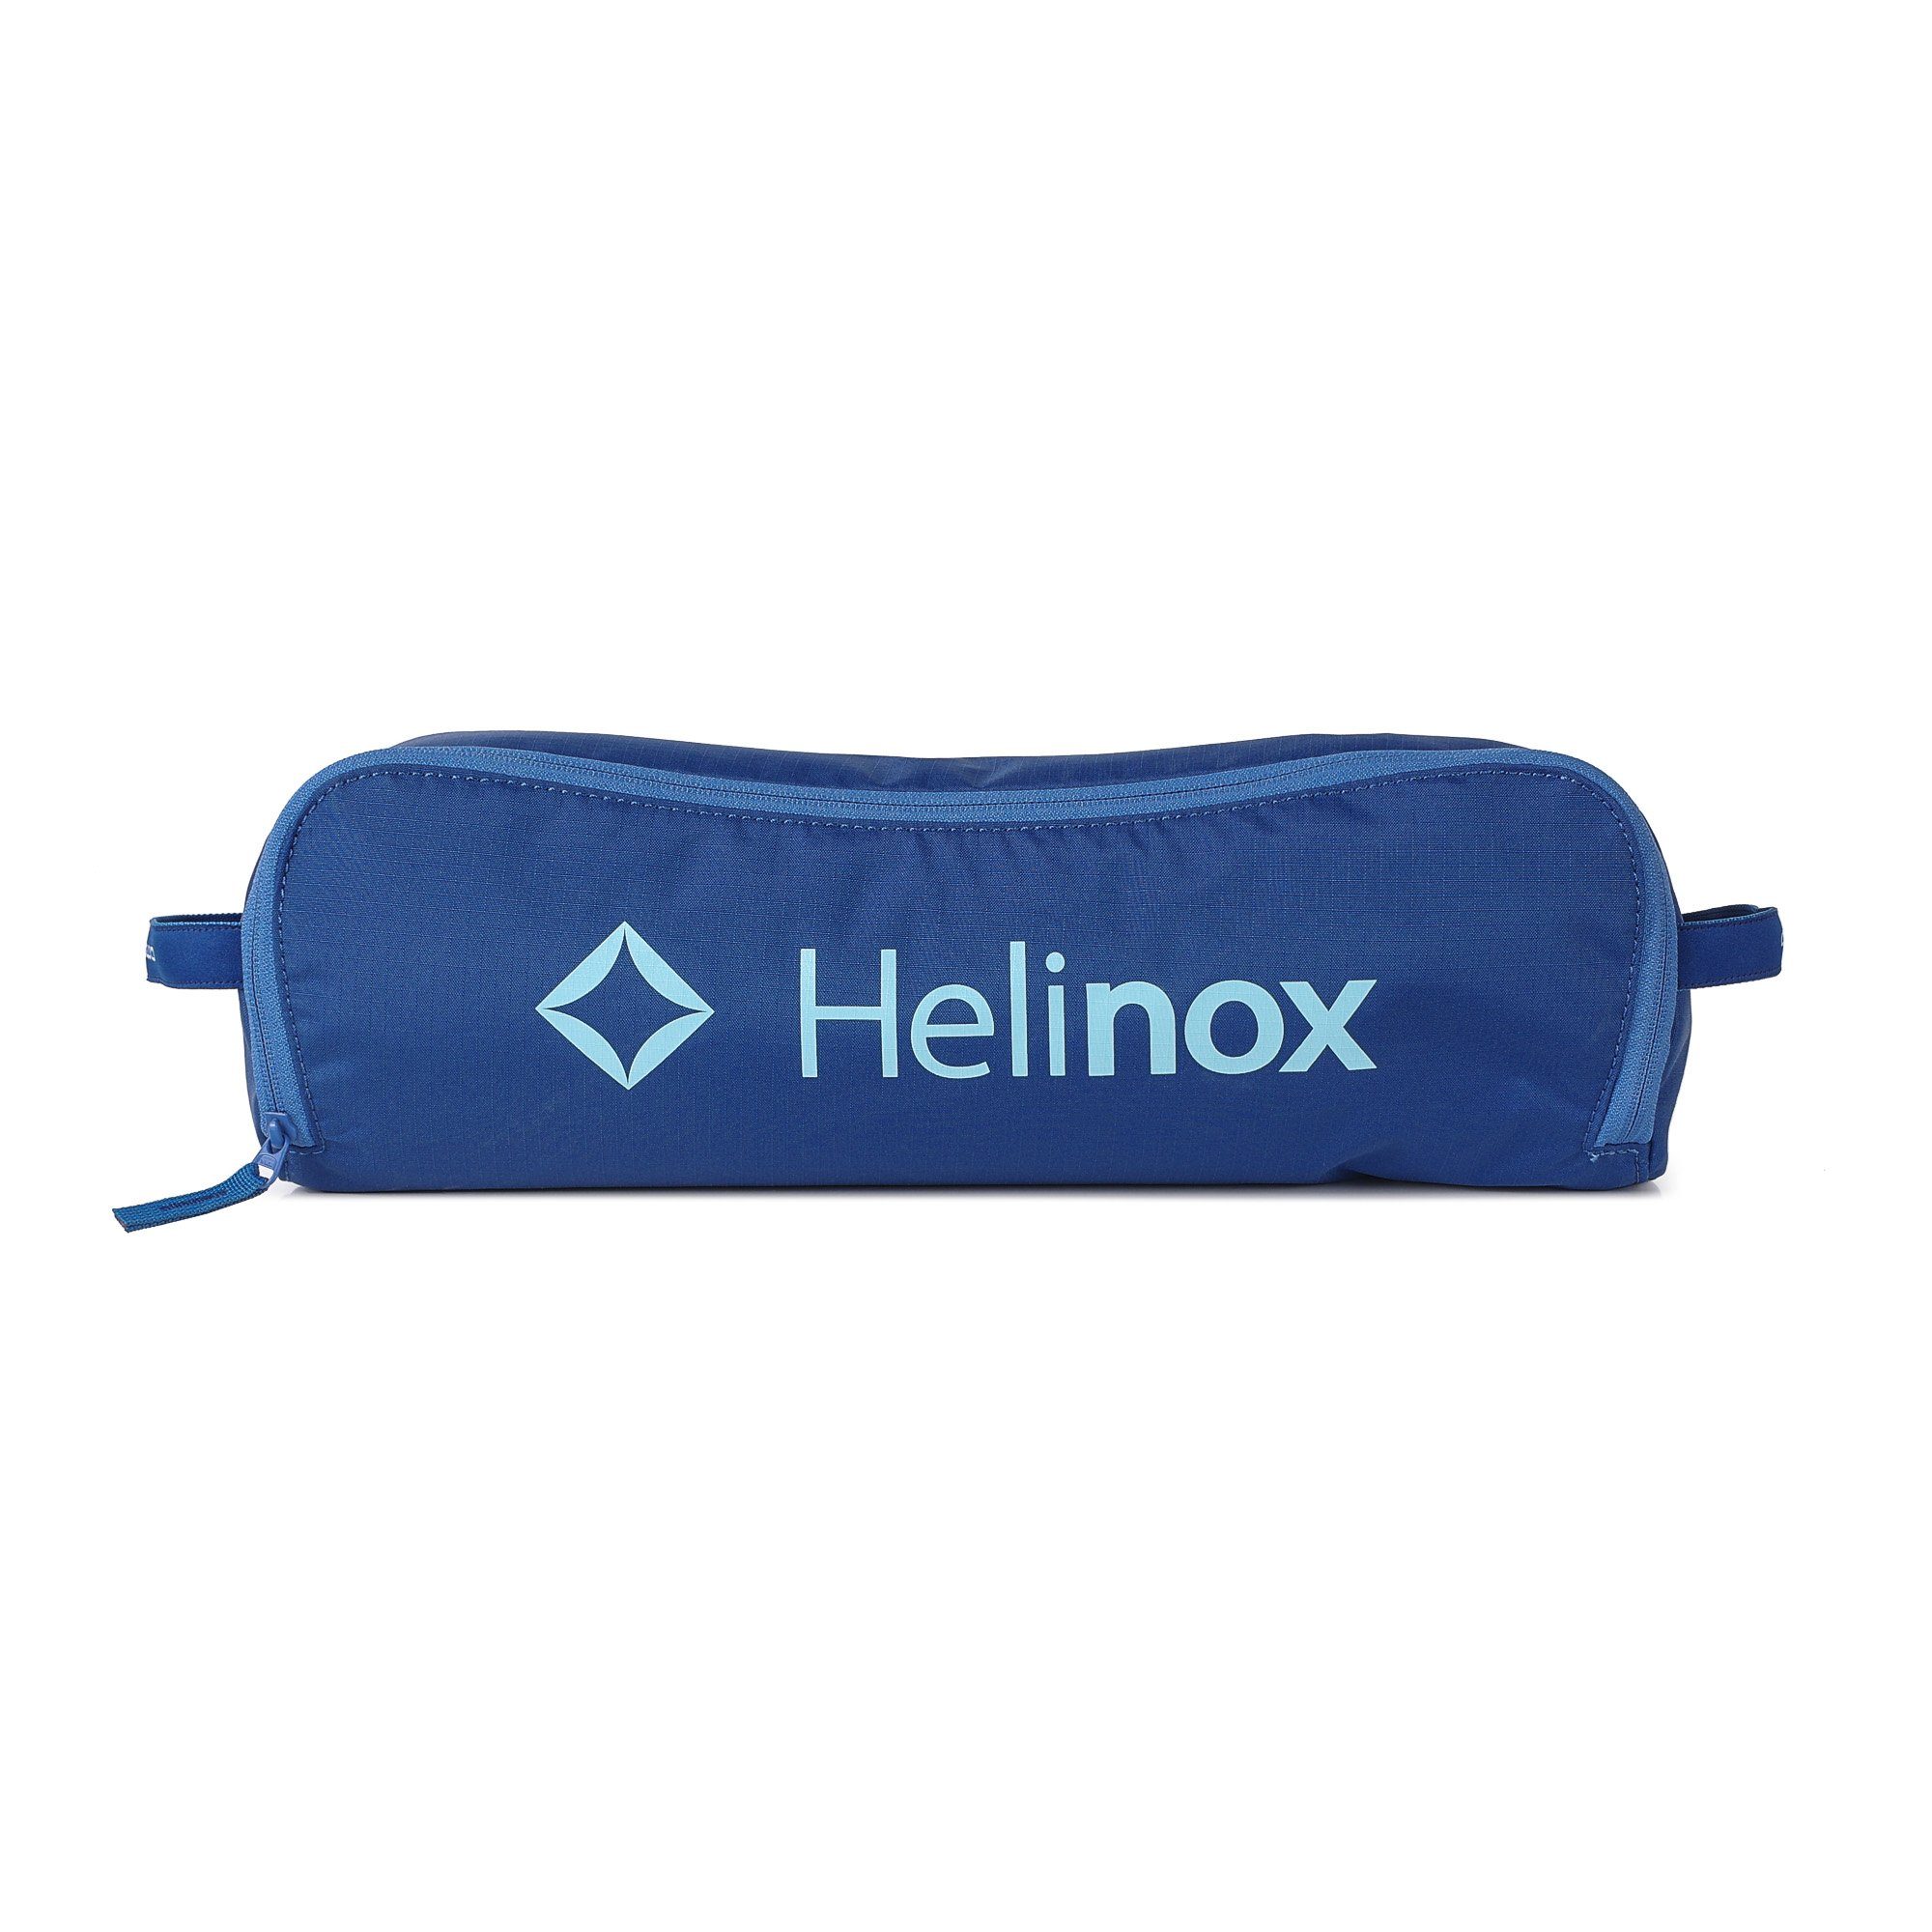 Pockets + Block Helinox Blue Campingstuhl